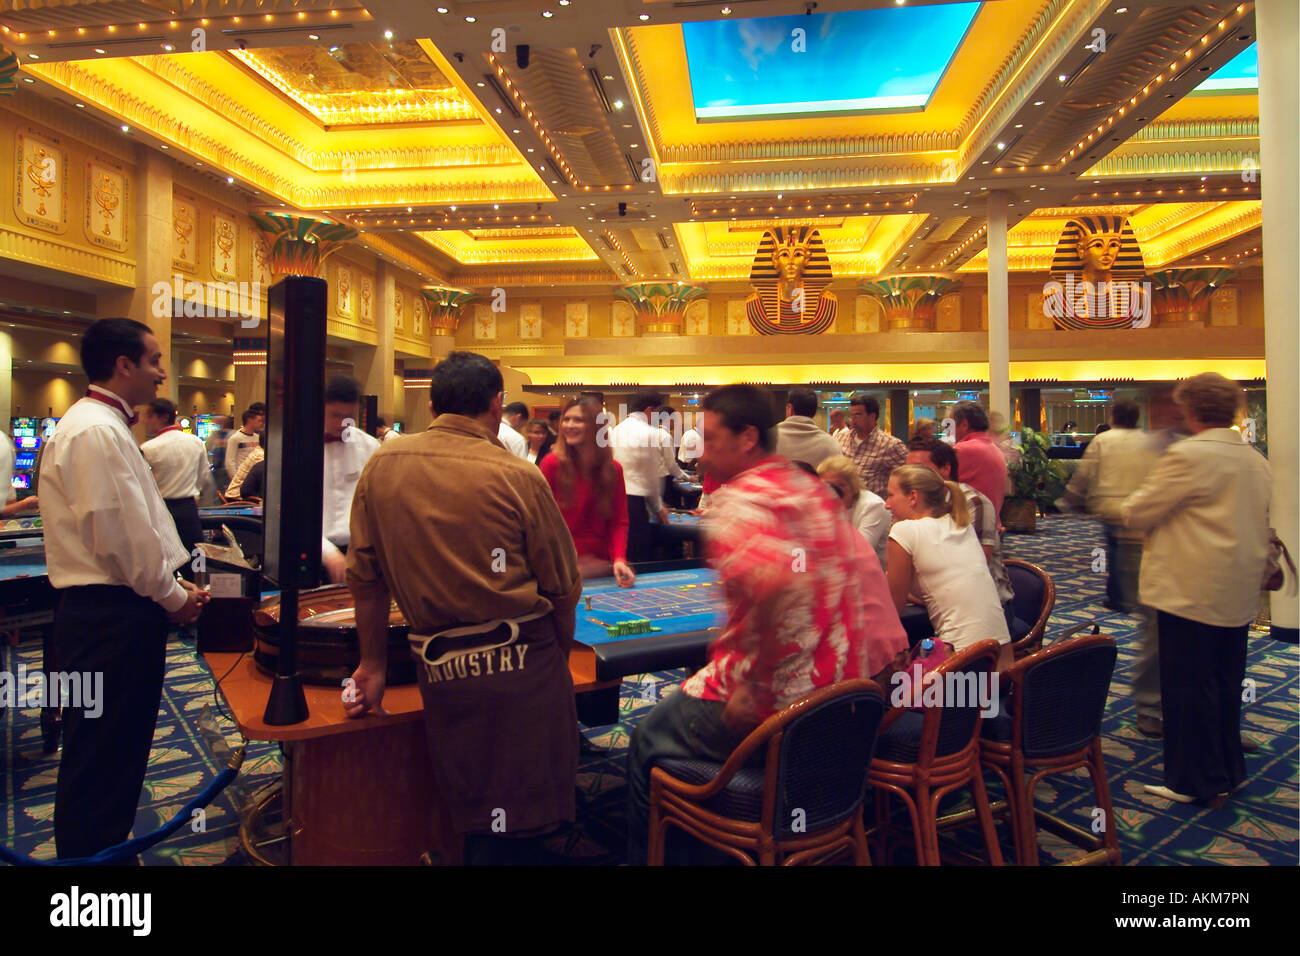 синай гранд казино египет